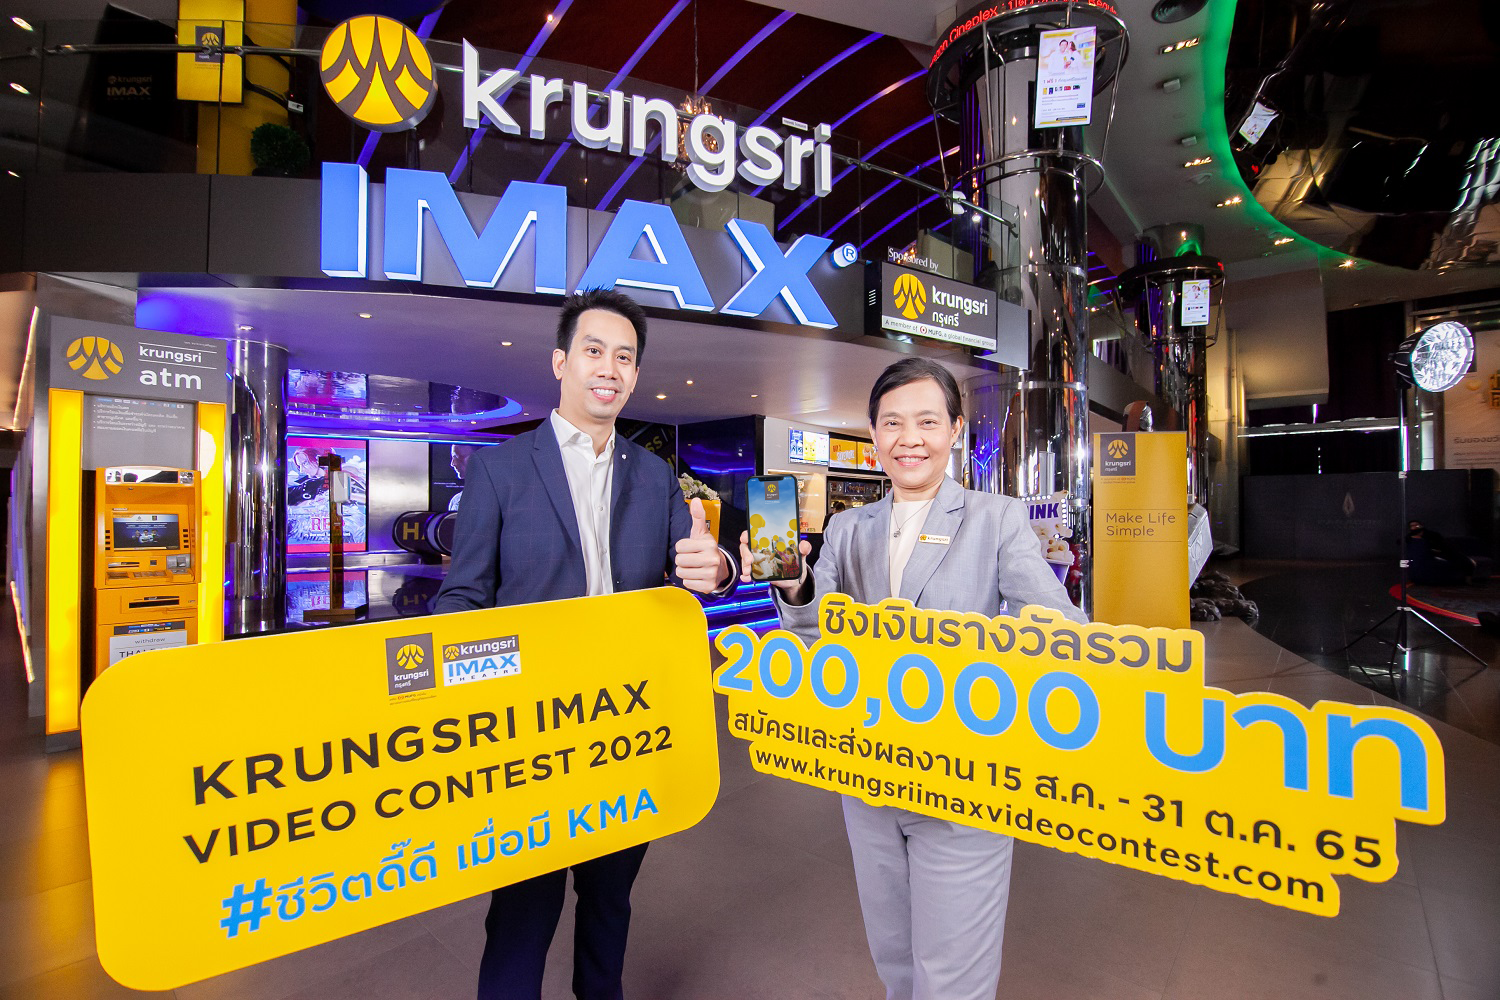 กรุงศรี ร่วมกับ เมเจอร์ ซีนีเพล็กซ์ จัดประกวดคลิปวิดีโอ “Krungsri IMAX Video Contest 2022” หัวข้อ “ชีวิตดี๊ดี เมื่อมี KMA”